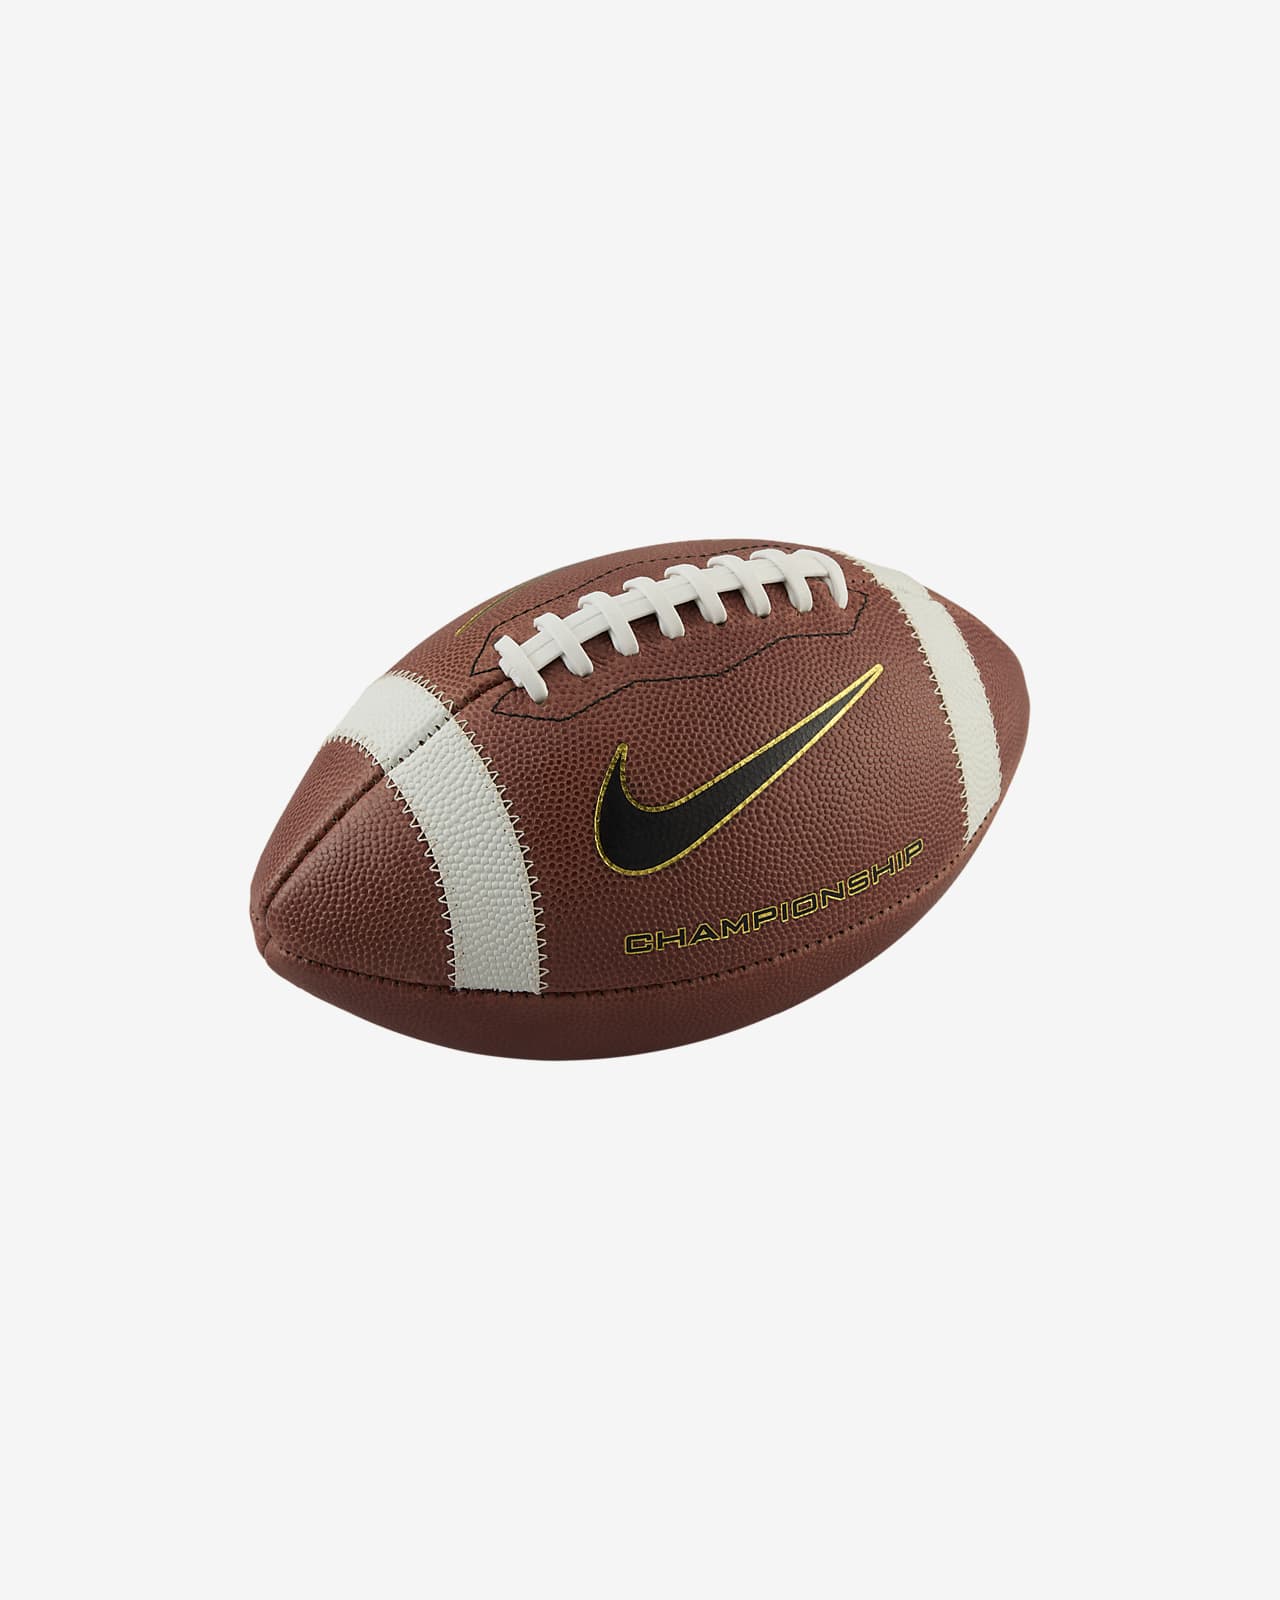 Balón de fútbol americano Nike Championship